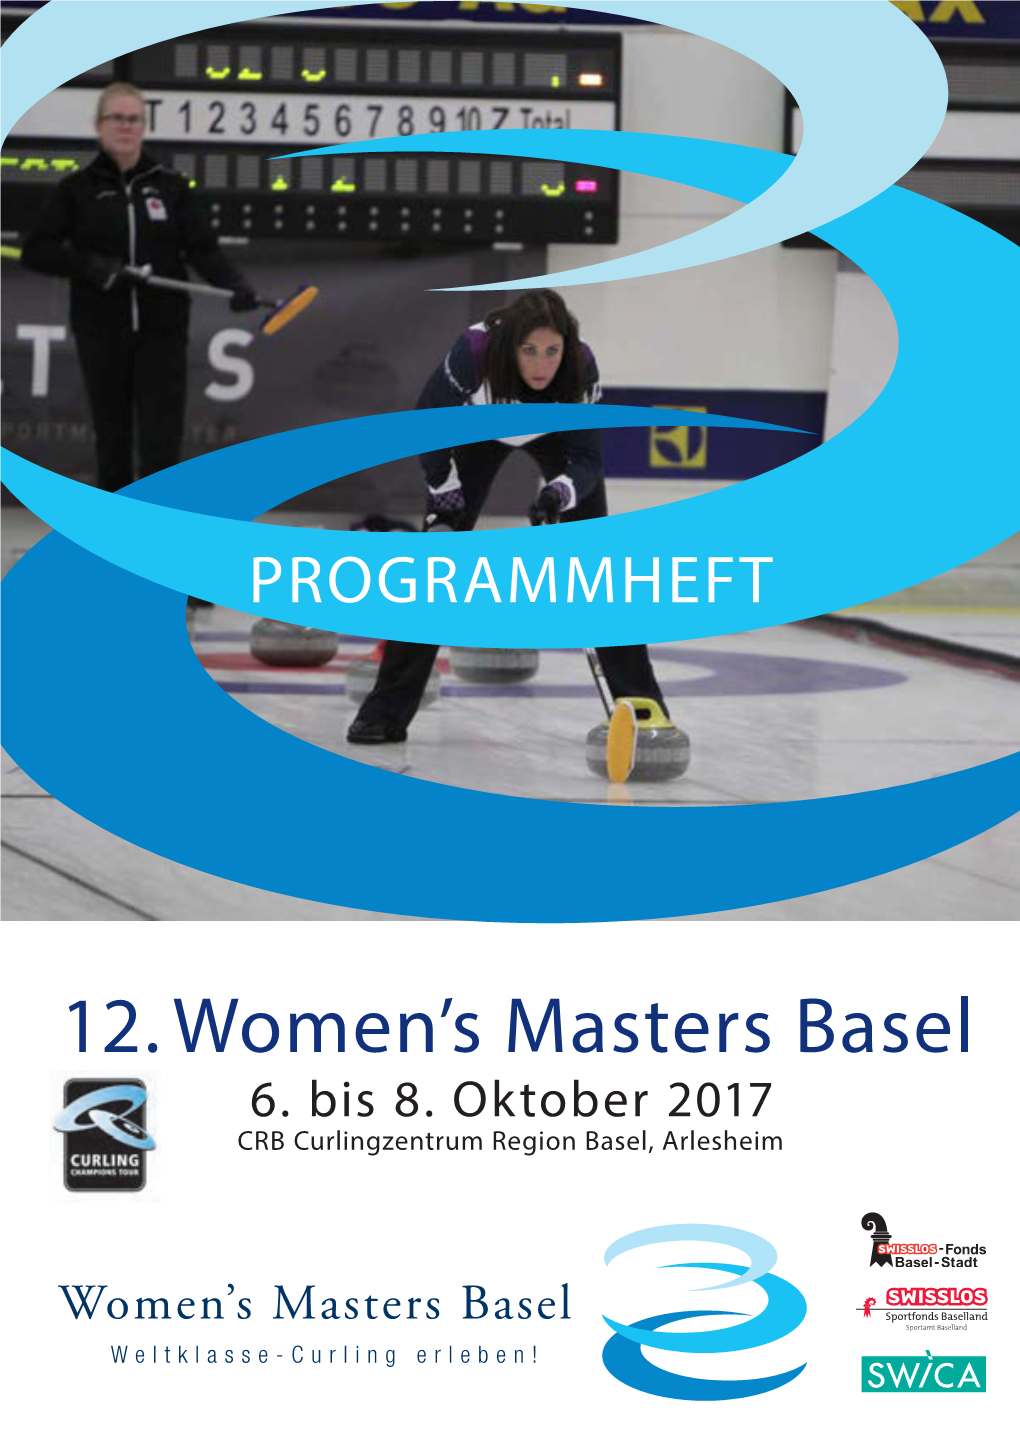 12. Women's Masters Basel